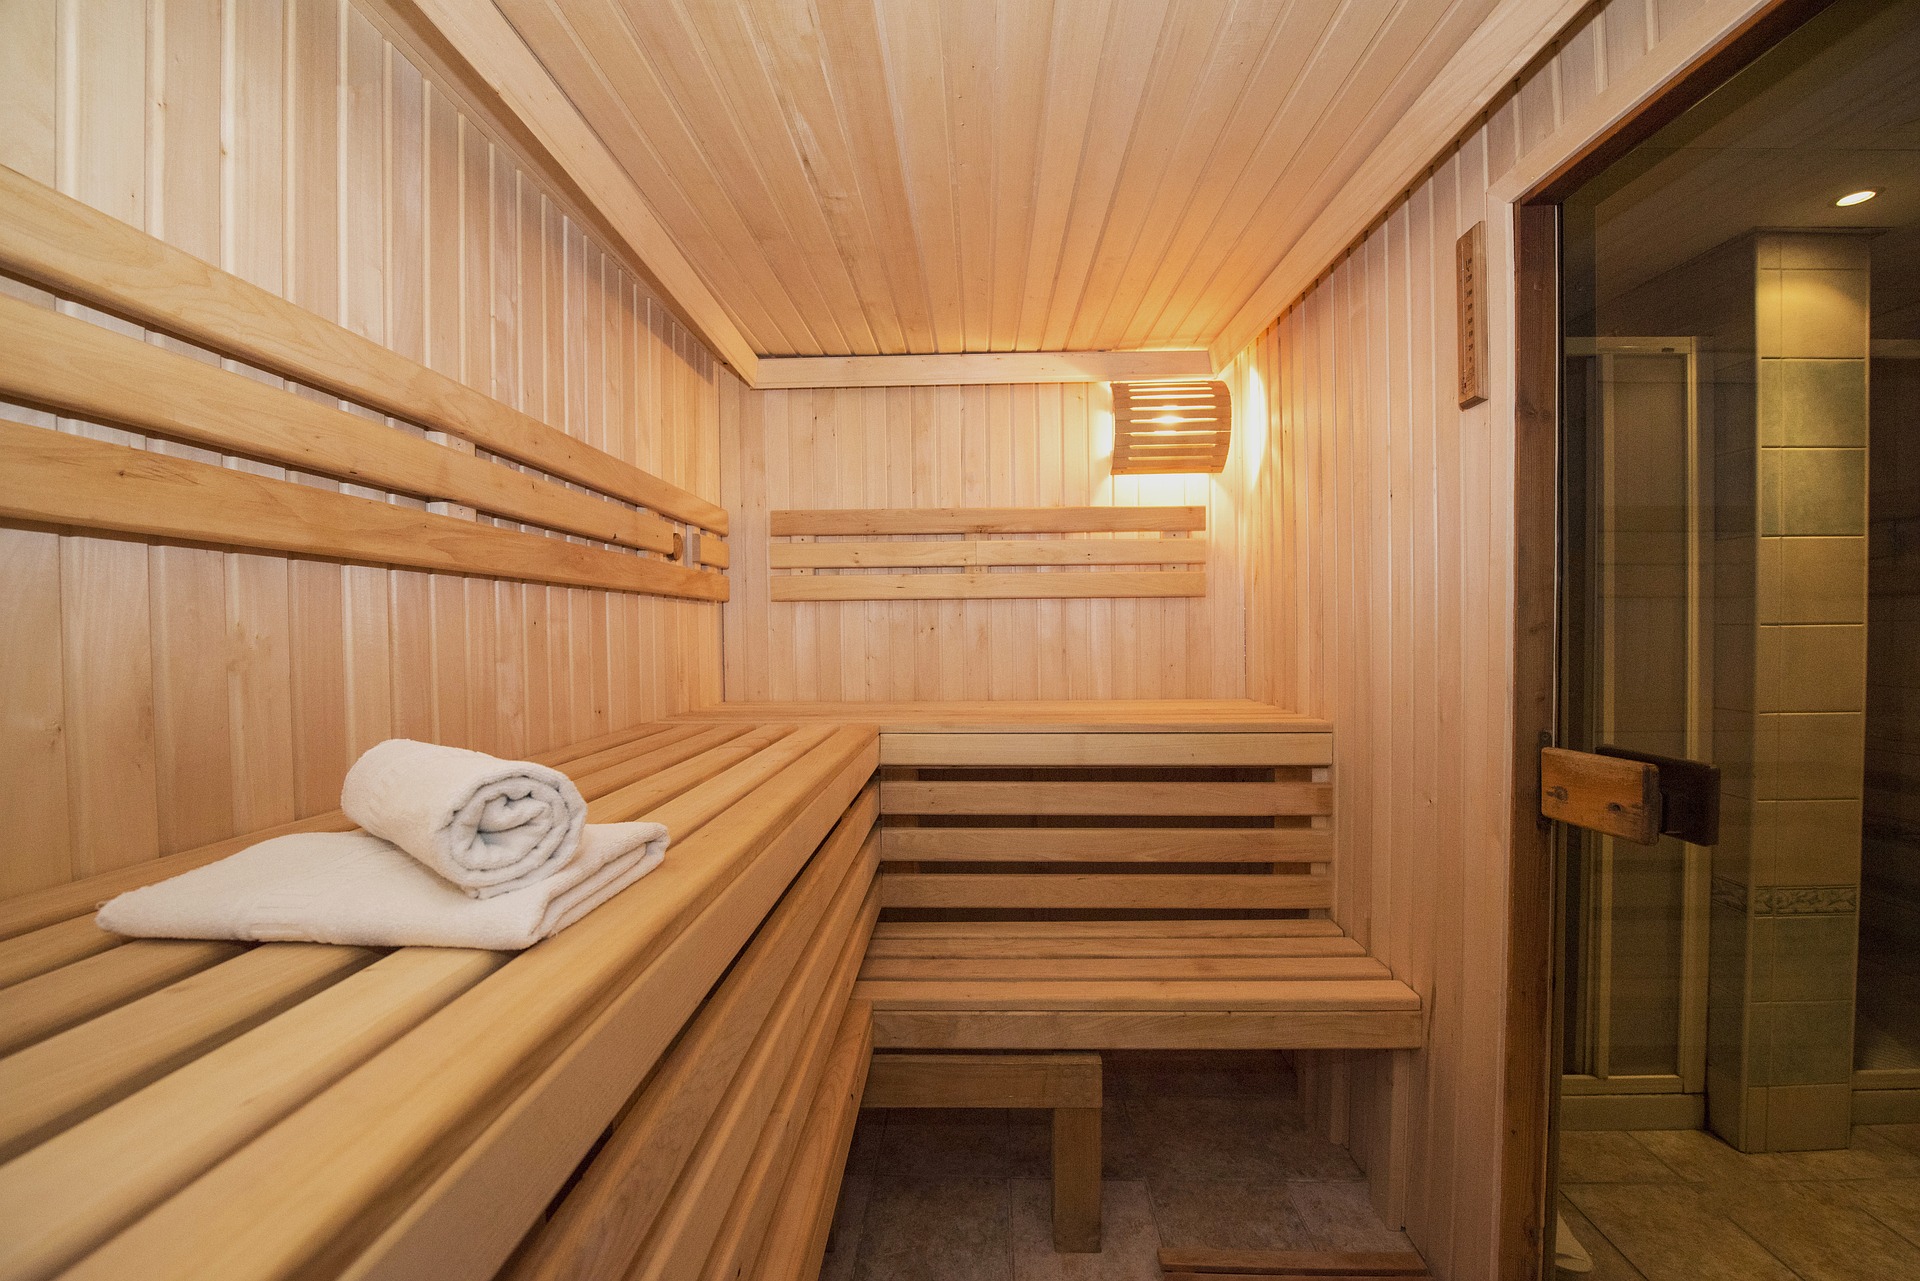 academisch Riet Vertrappen Een sauna in eigen woning: op welke kosten kun je rekenen?